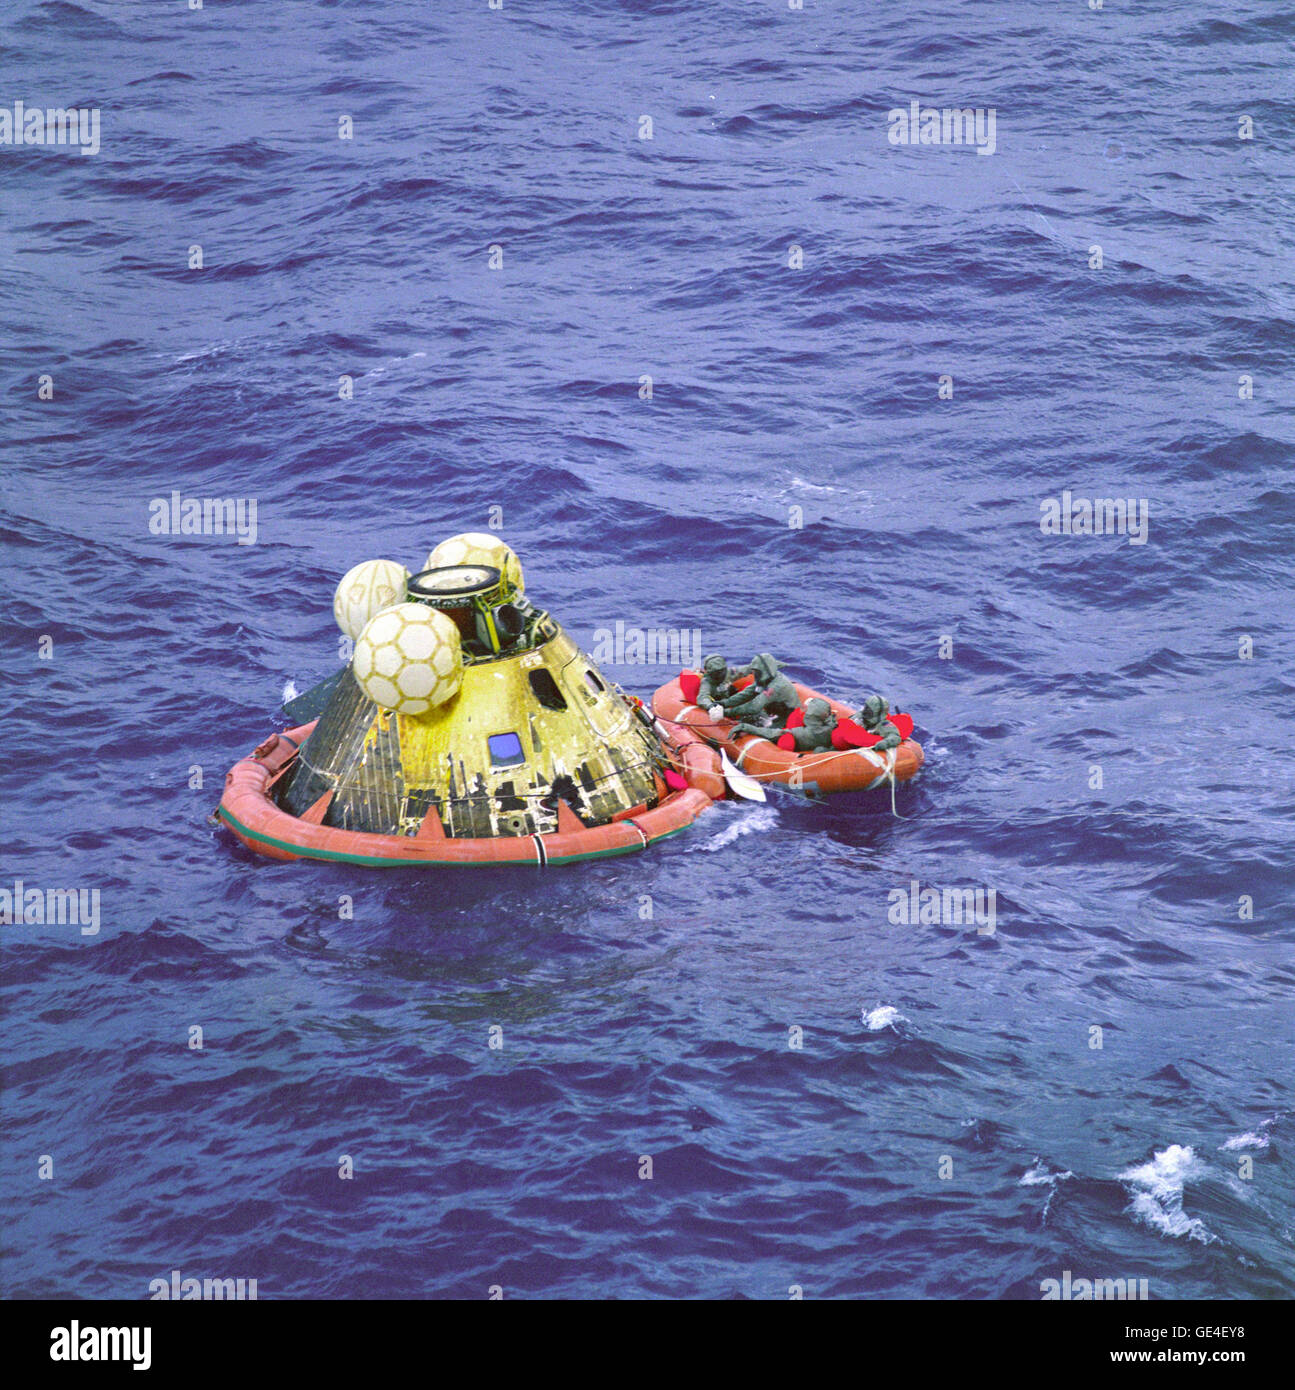 (24 juillet 1969) l'équipage d'Apollo 11 attendent d'un hélicoptère à partir de l'USS Hornet, premier navire de récupération de l'historique mission Apollo 11 lunar landing. Le quatrième homme dans le radeau de survie est un nageur de l'équipe de démolition sous-marine. Les quatre hommes portent des vêtements d'Isolation biologique (BIG). Le module de commande Apollo 11 "Columbia", avec des astronautes Neil A. Armstrong, Michael Collins et Edwin E. Aldrin Jr. éclaboussé jusqu'à 11 h 49 (HAE), le 24 juillet 1969, à environ 812 milles marins au sud-ouest d'Hawaii et seulement 12 milles marins de l'USS Hornet. Image #  : S69-21698 Banque D'Images